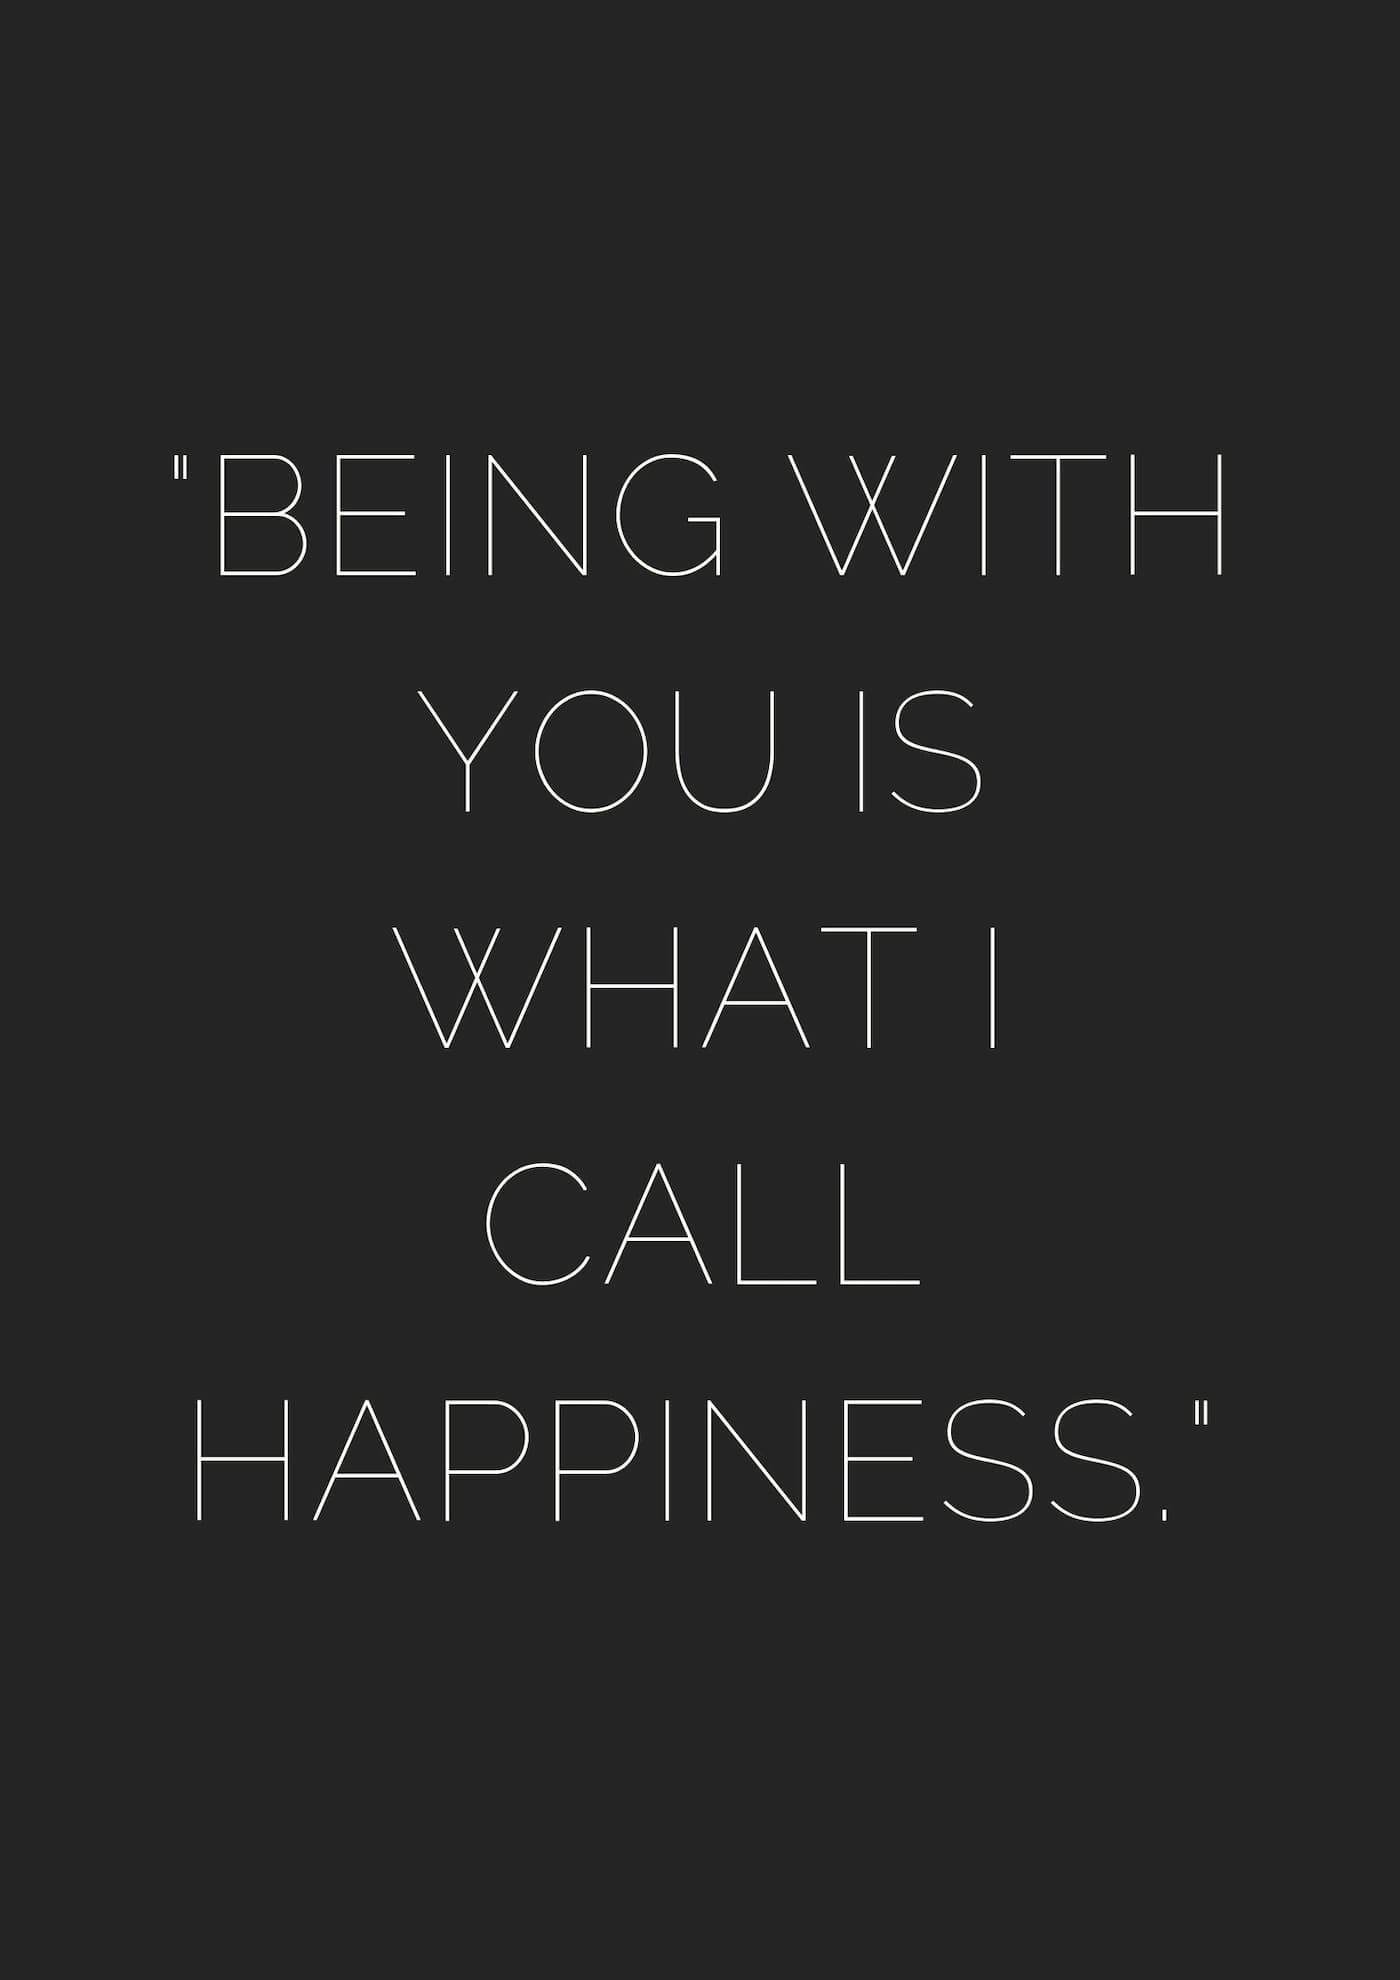 معنی جمله Being with you is what i call happiness چیست؟